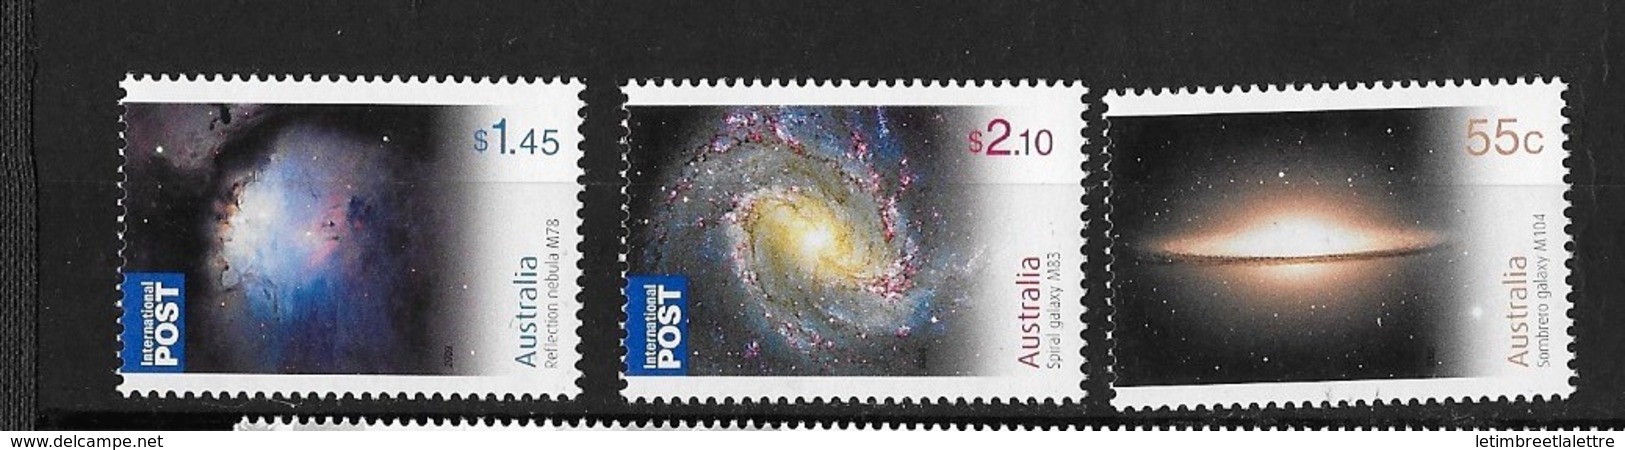 Australie N°3143 à 3145** Année Internationale De L'astronomie Galaxie - Astronomy